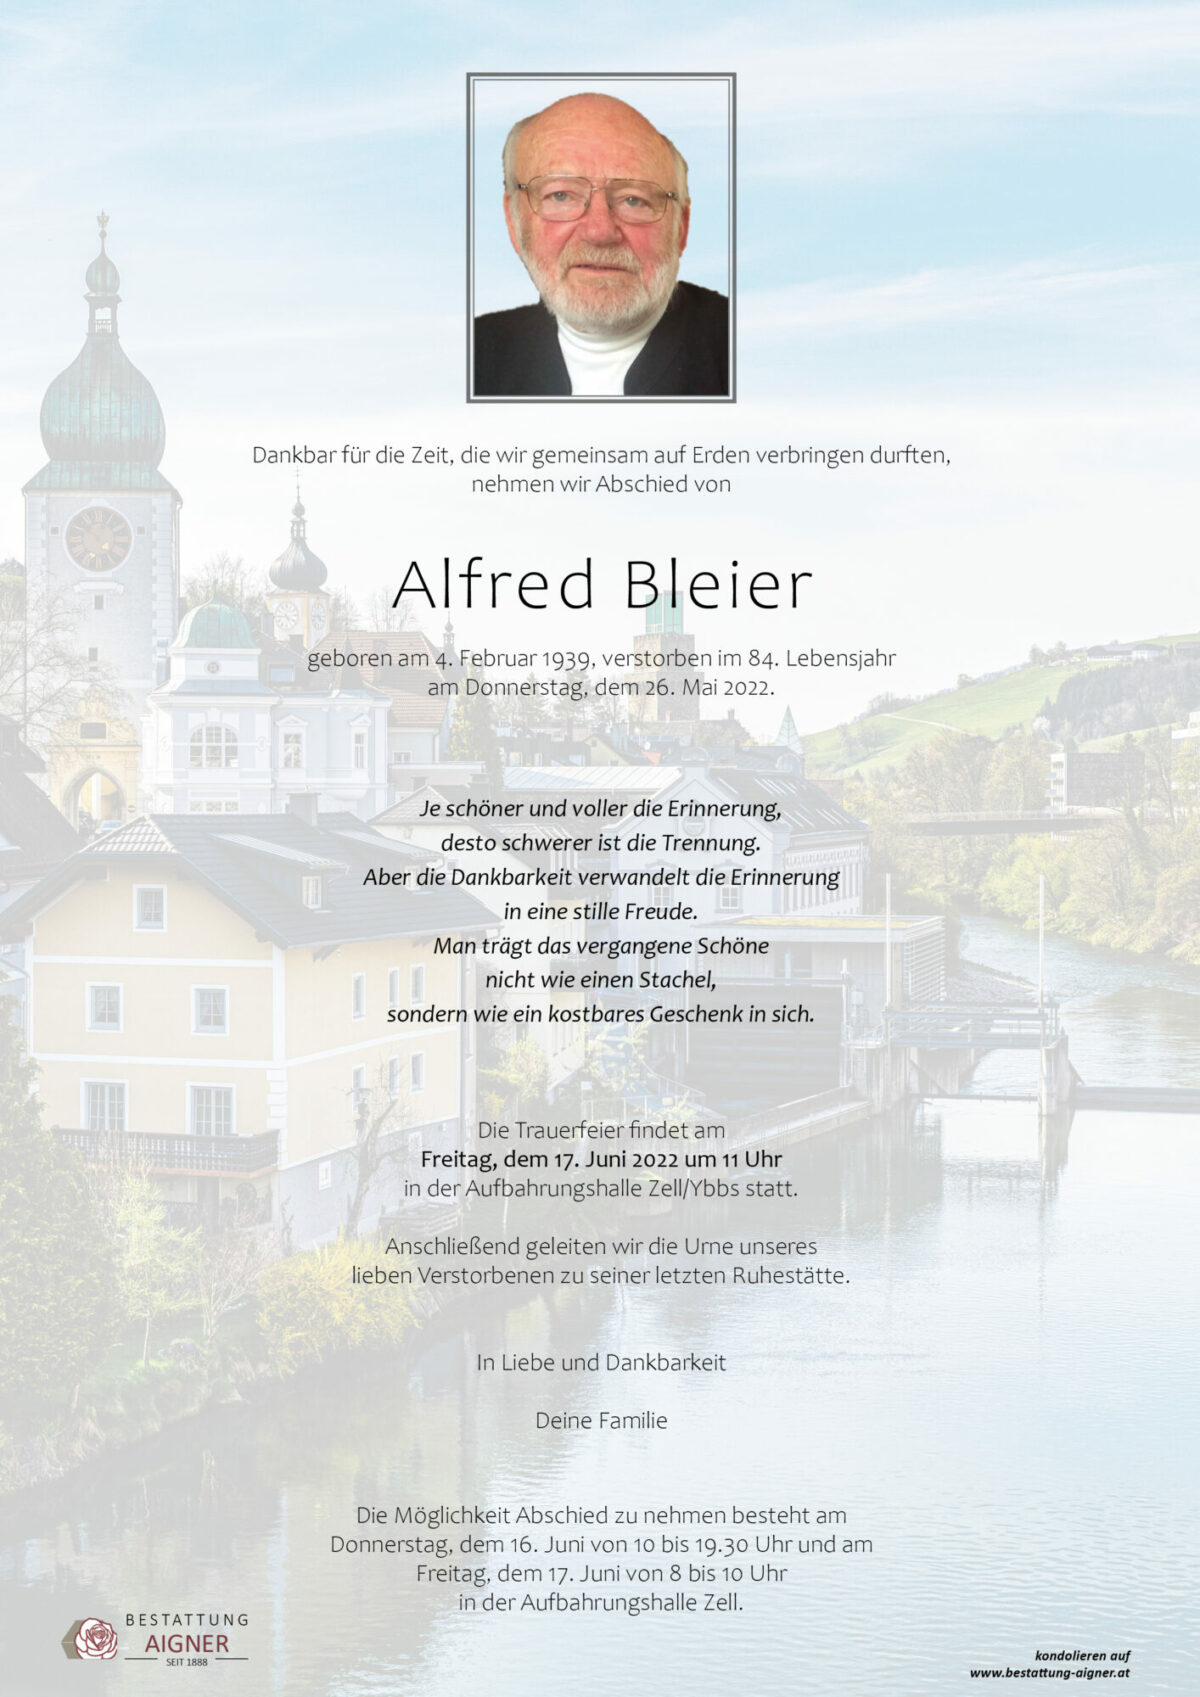 Alfred Bleier